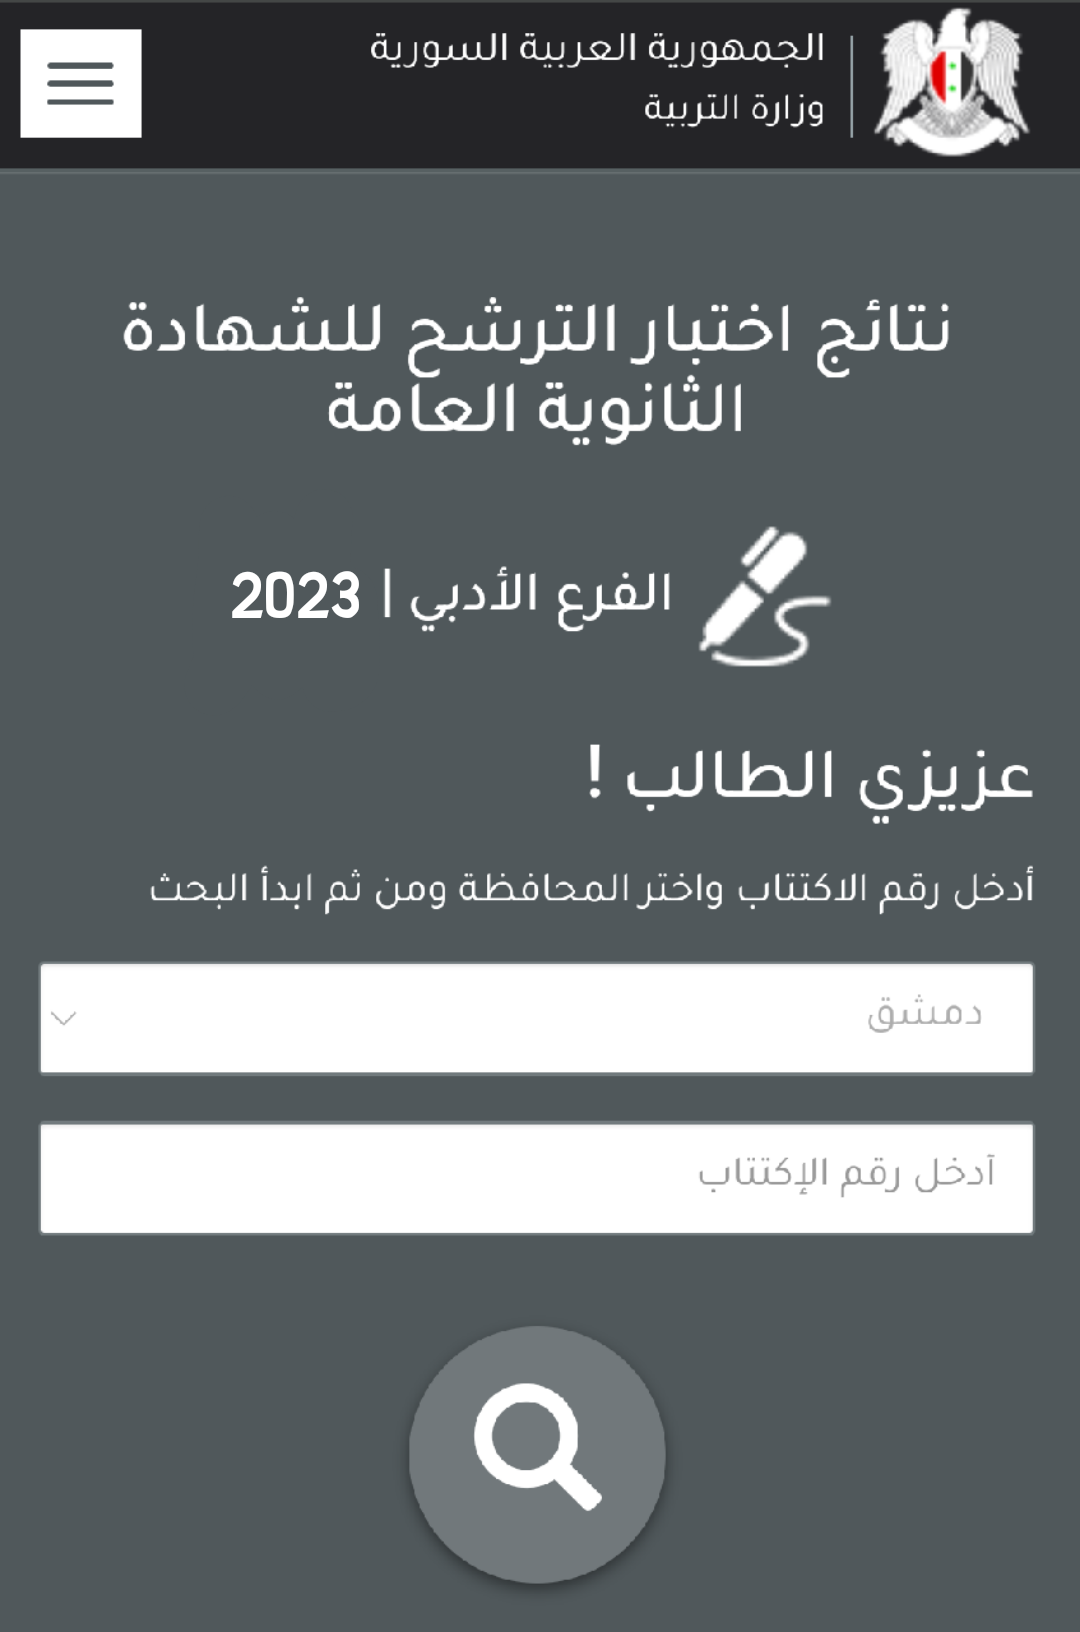 نتائج الامتحان الترشيحي في سورية حسب رقم الاكتتاب 2023 ادبي